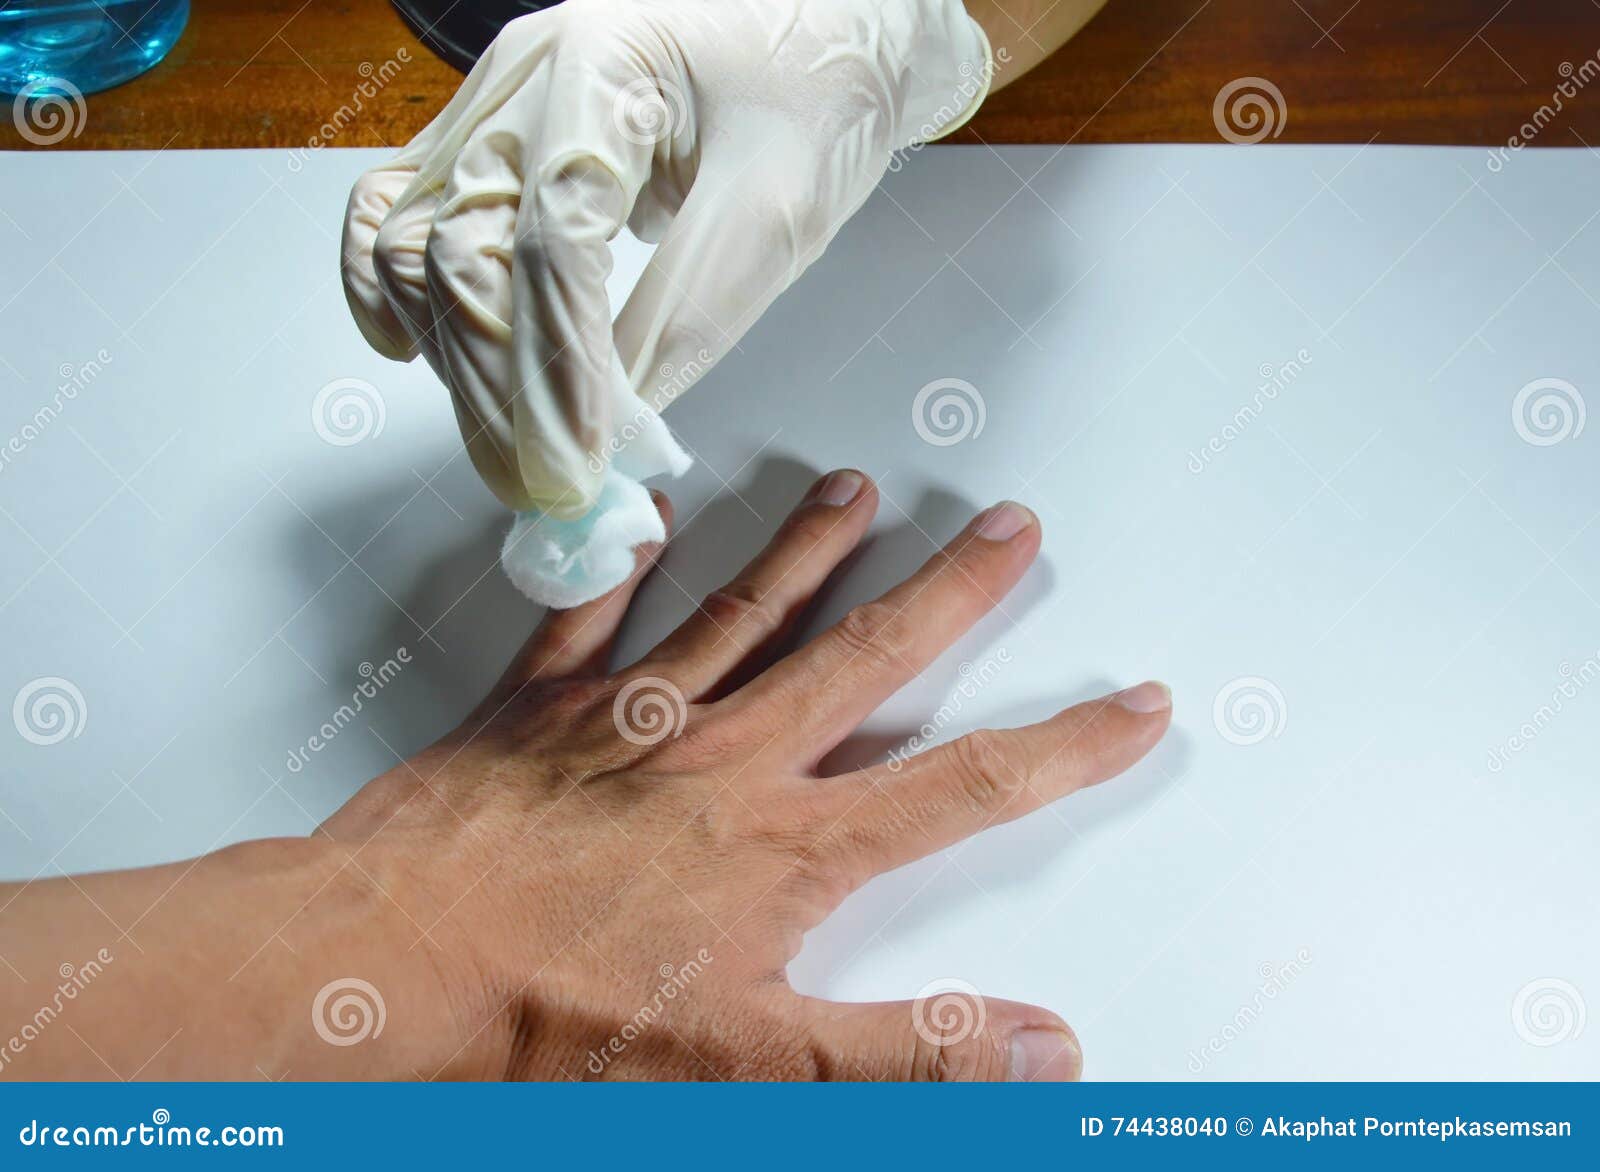 От чего потеют руки. Потные руки в перчатках. Потные резиновых перчатка. Рука в медицинской перчатке. Перчатки от потения рук.